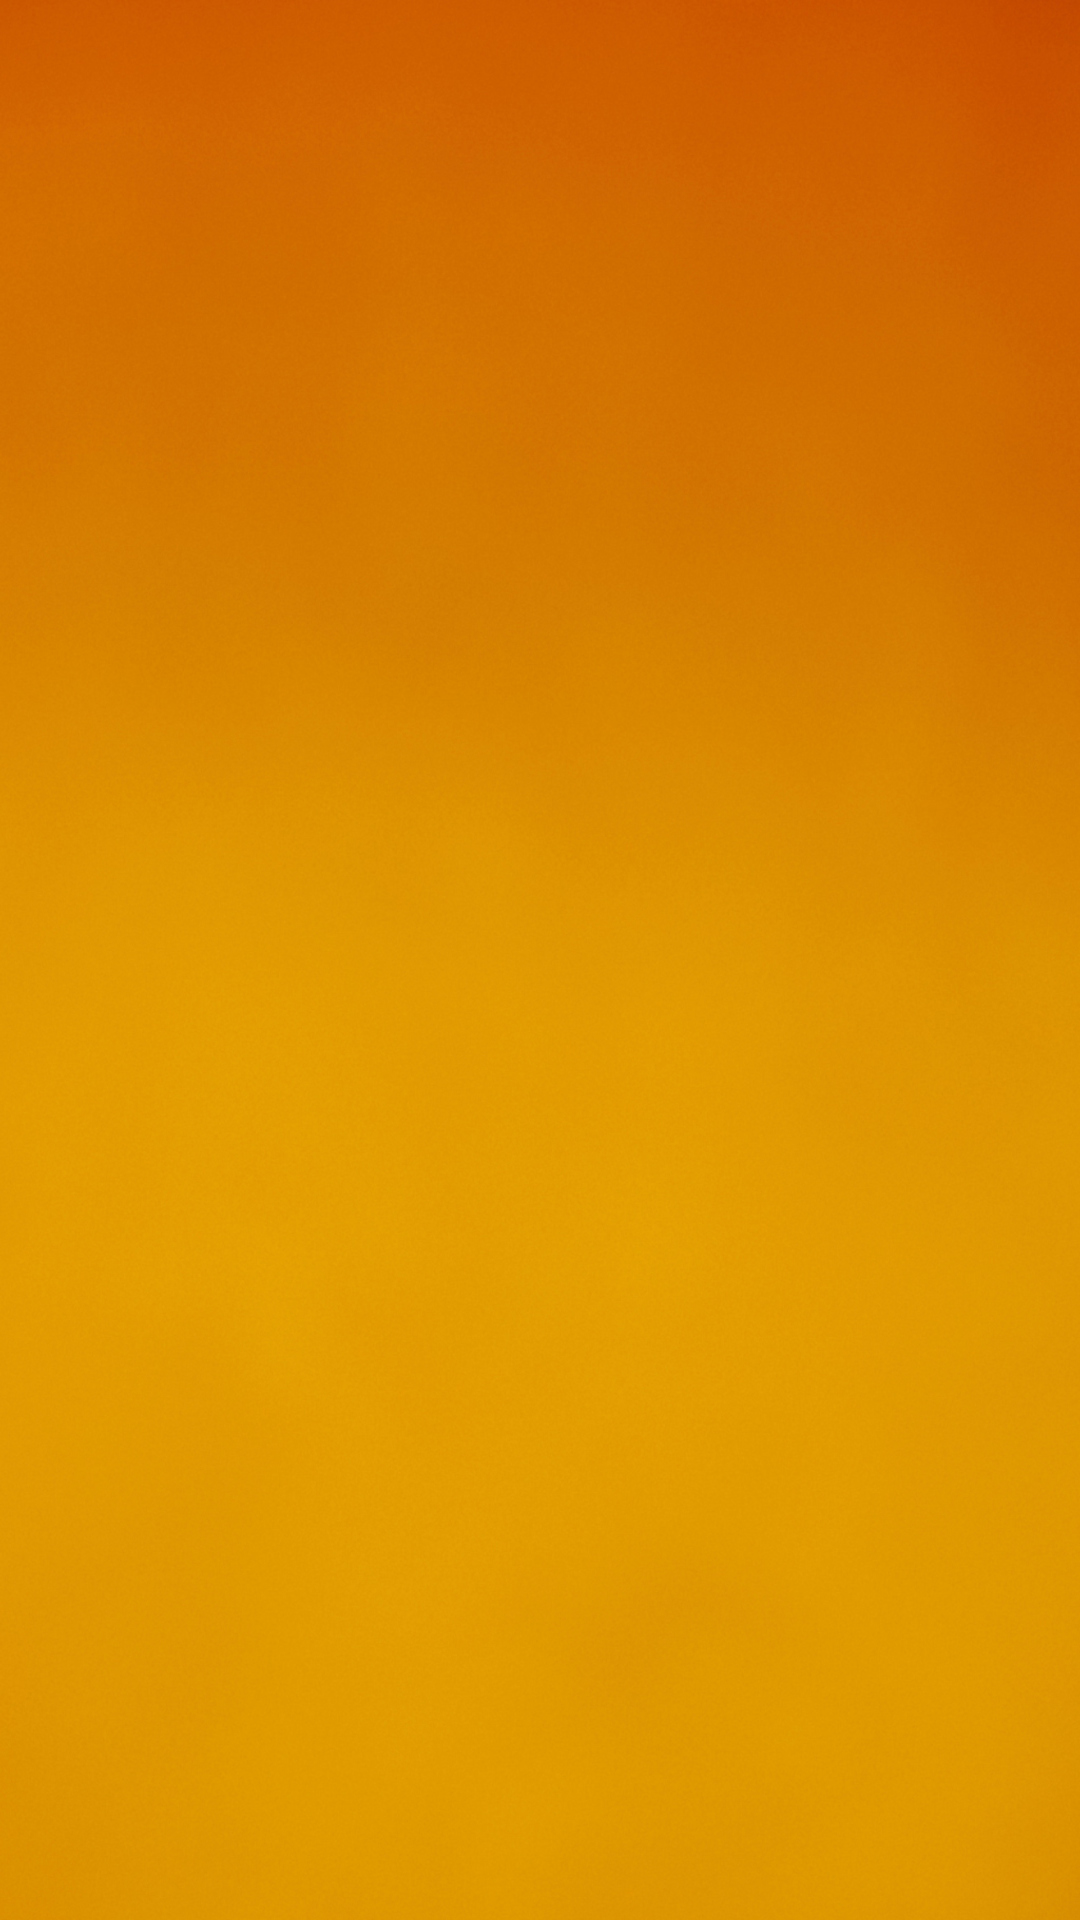 Das Orange Background Wallpaper 1080x1920